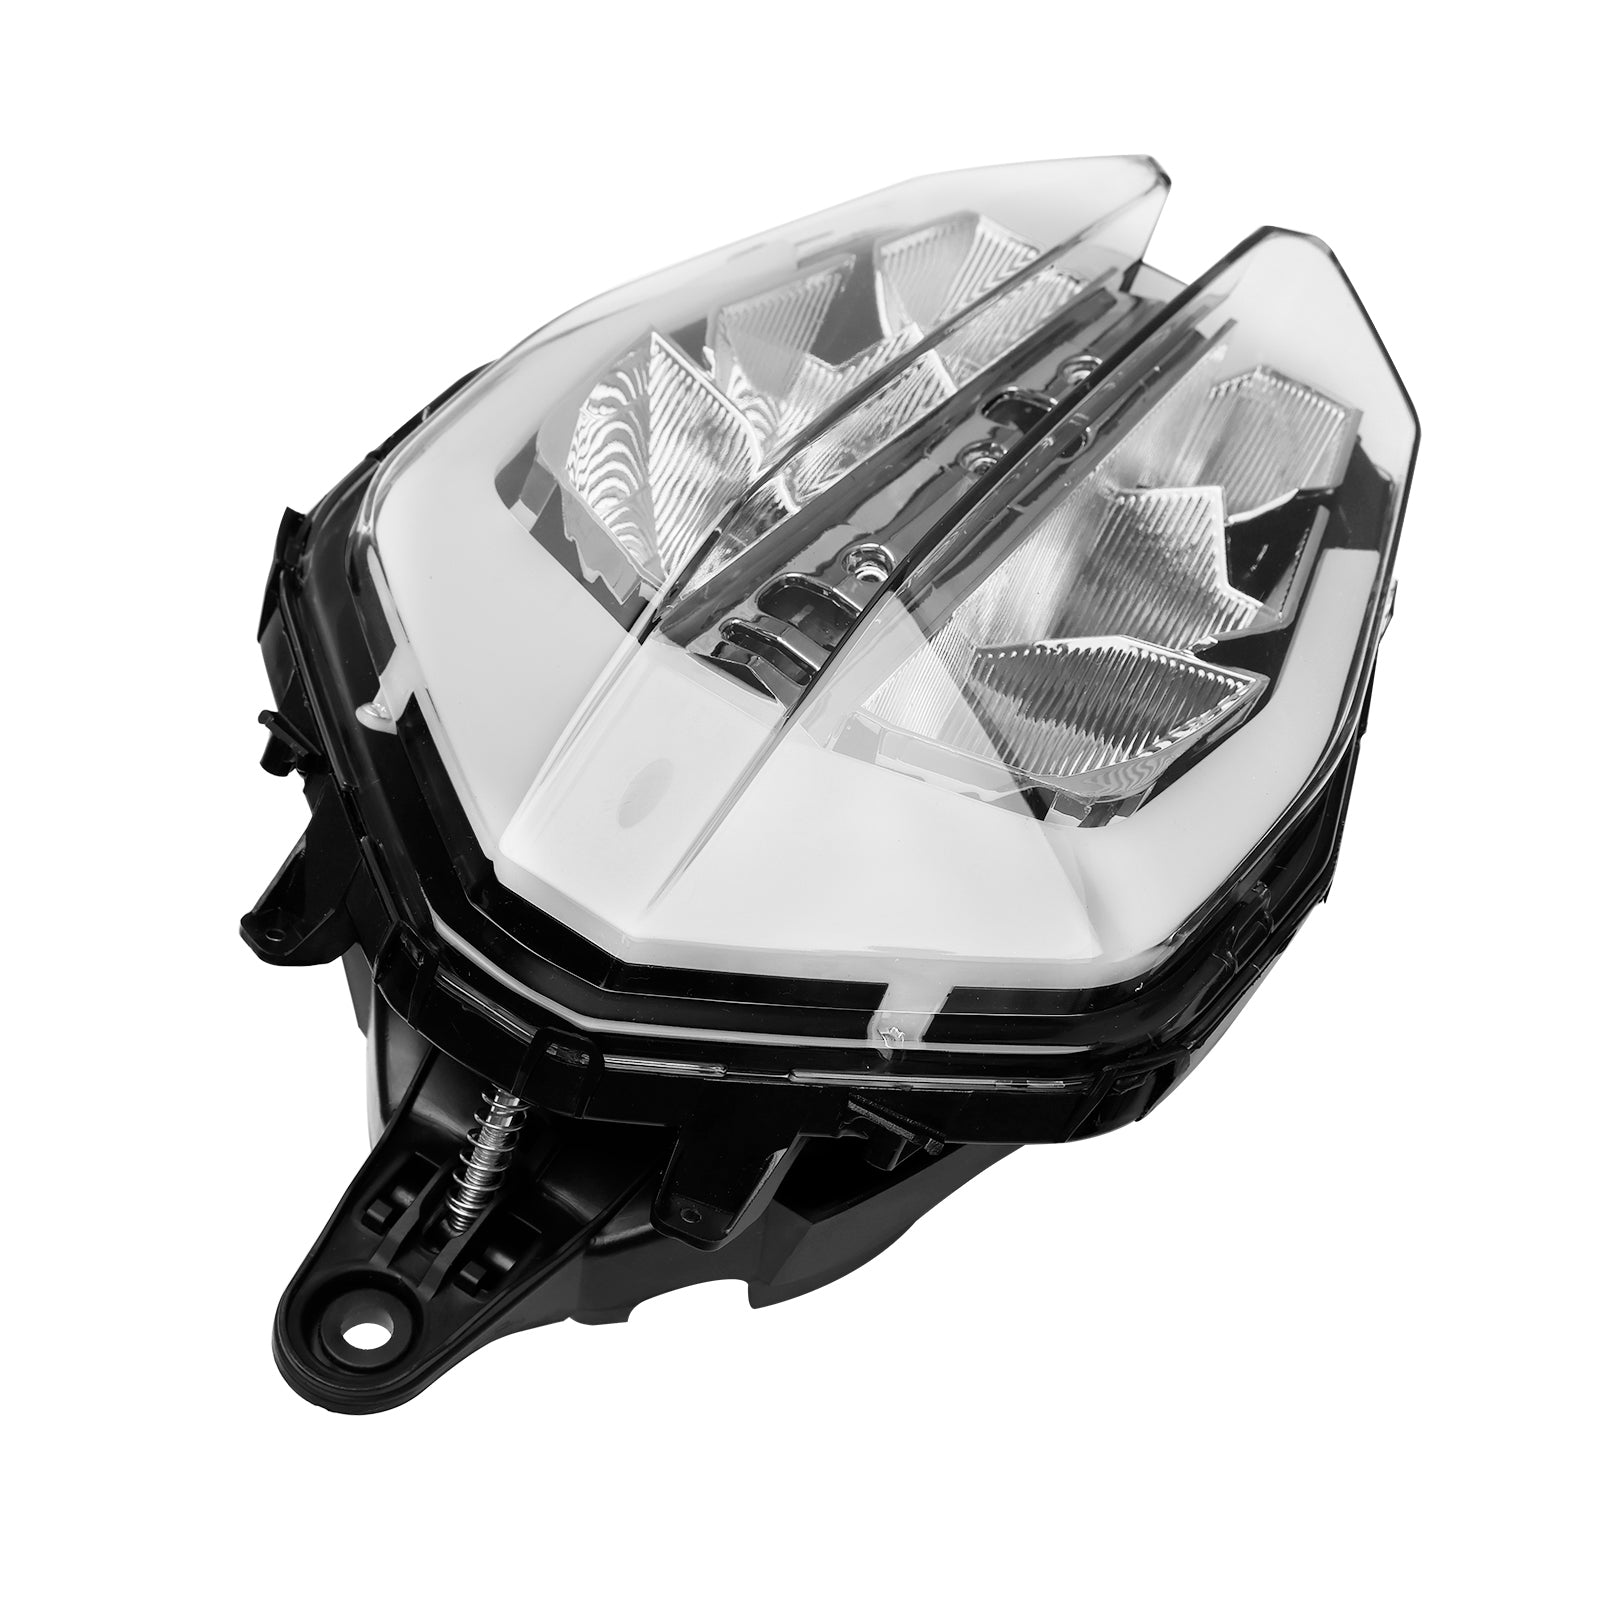 Griglia del faro anteriore Protezione LED in plastica per 390 2018-2019 Smoke